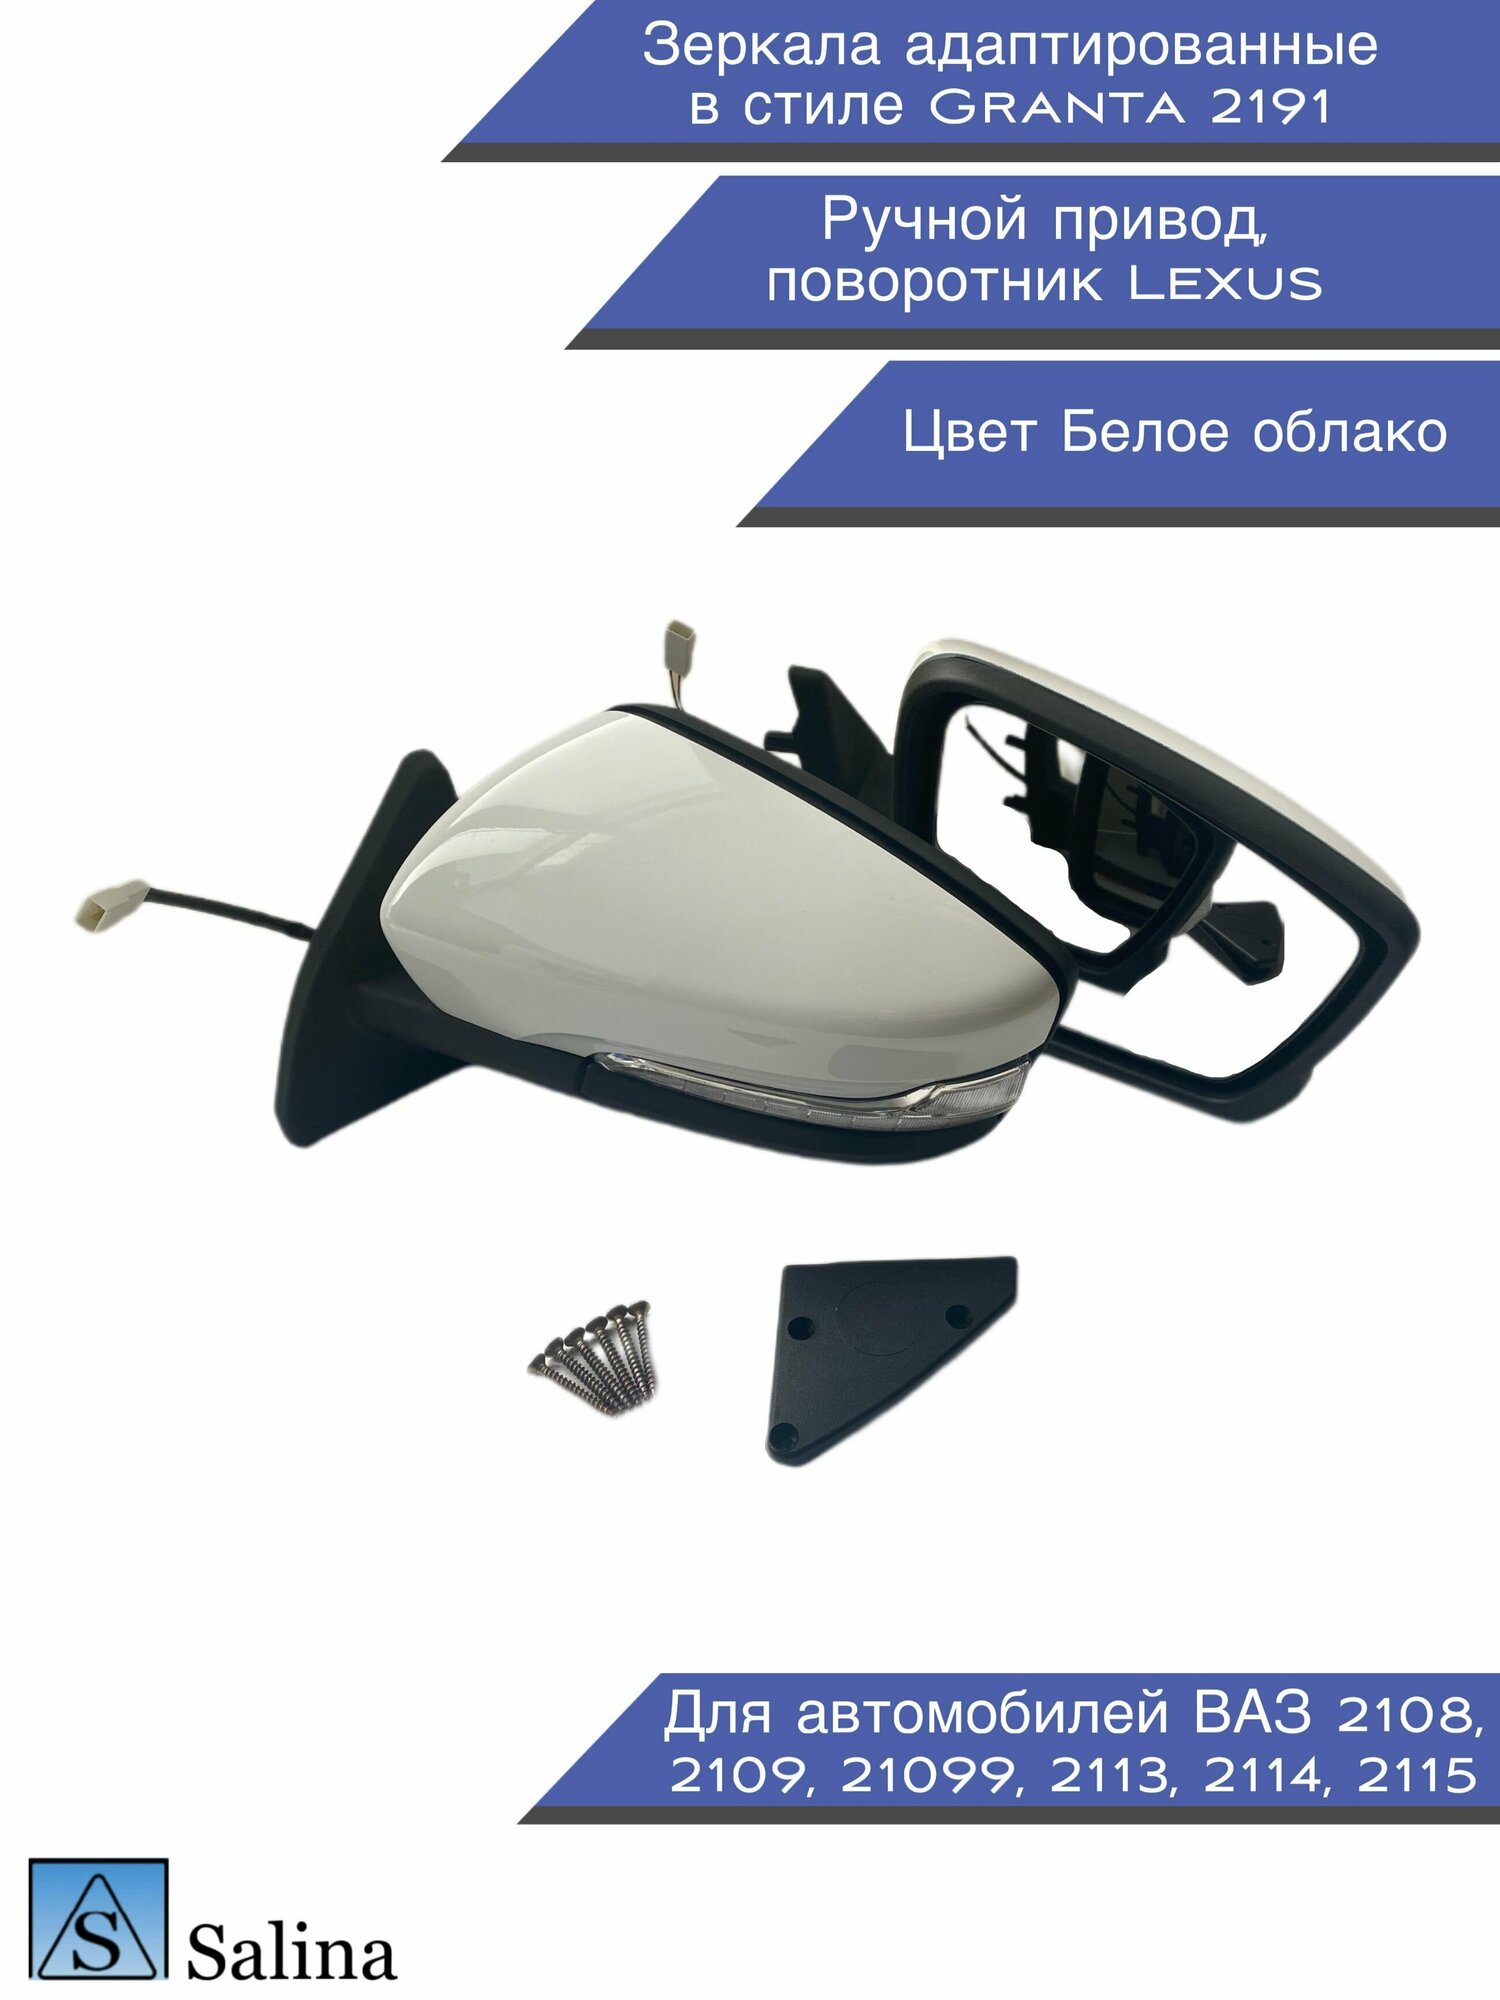 Зеркала адаптированные в стиле Гранта 2191 на ВАЗ 2108-2109 2113-2115 с ручным приводом и повторителем Lexus цвет белое облако